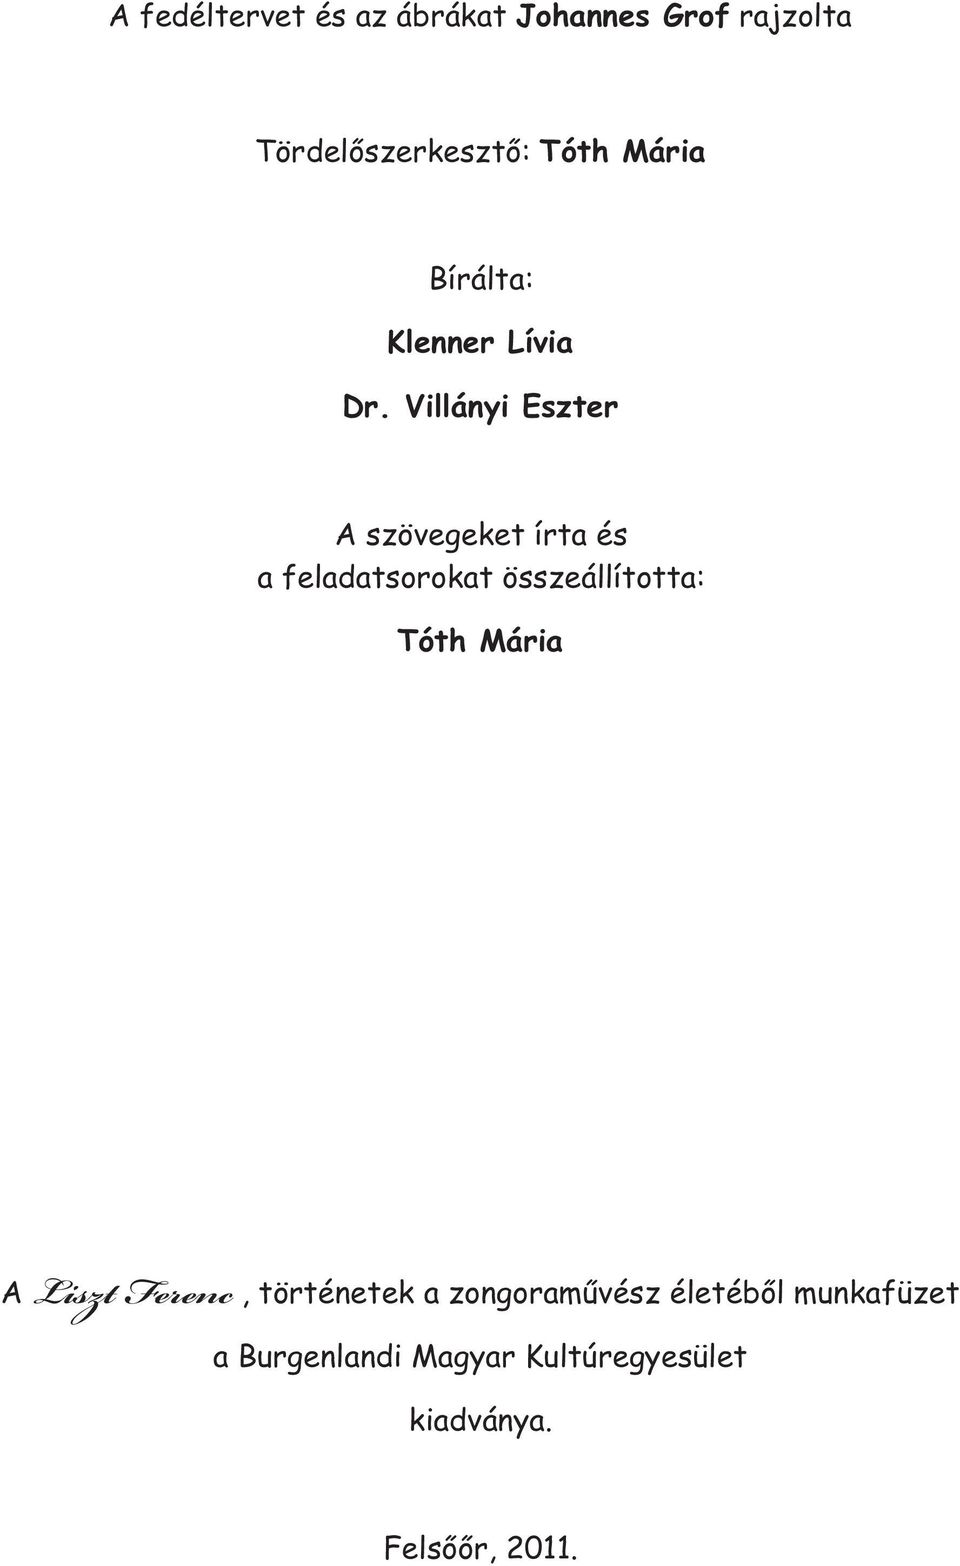 Liszt Ferenc. Történetek a zongoraművész életéből - PDF Ingyenes letöltés